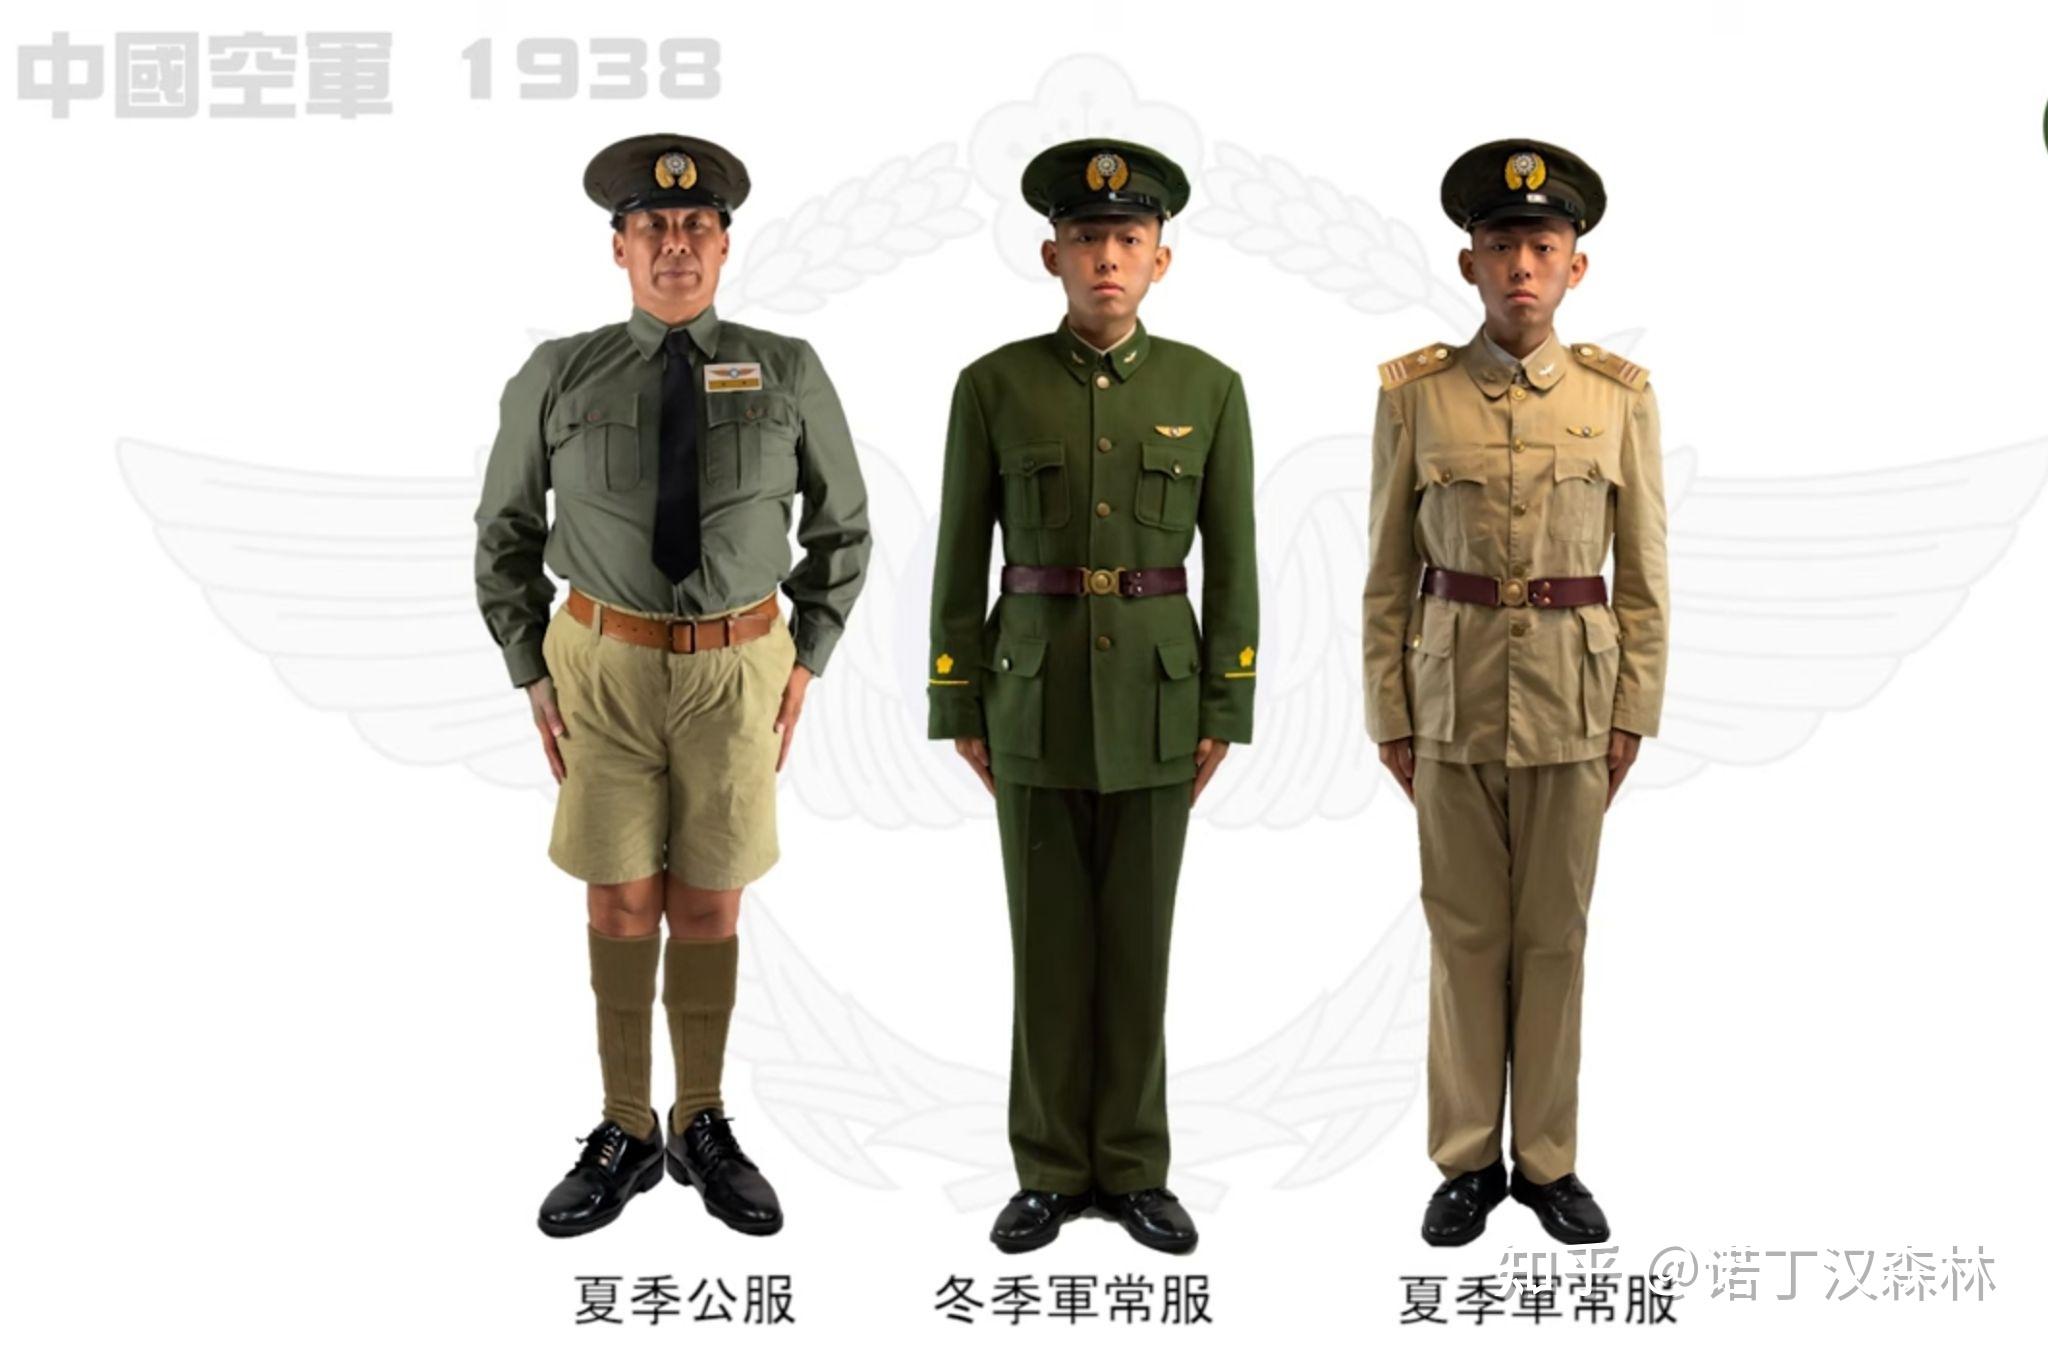 他身上穿着的军服和后面陆军军官的军服之间的差别,1939年后,空军士官